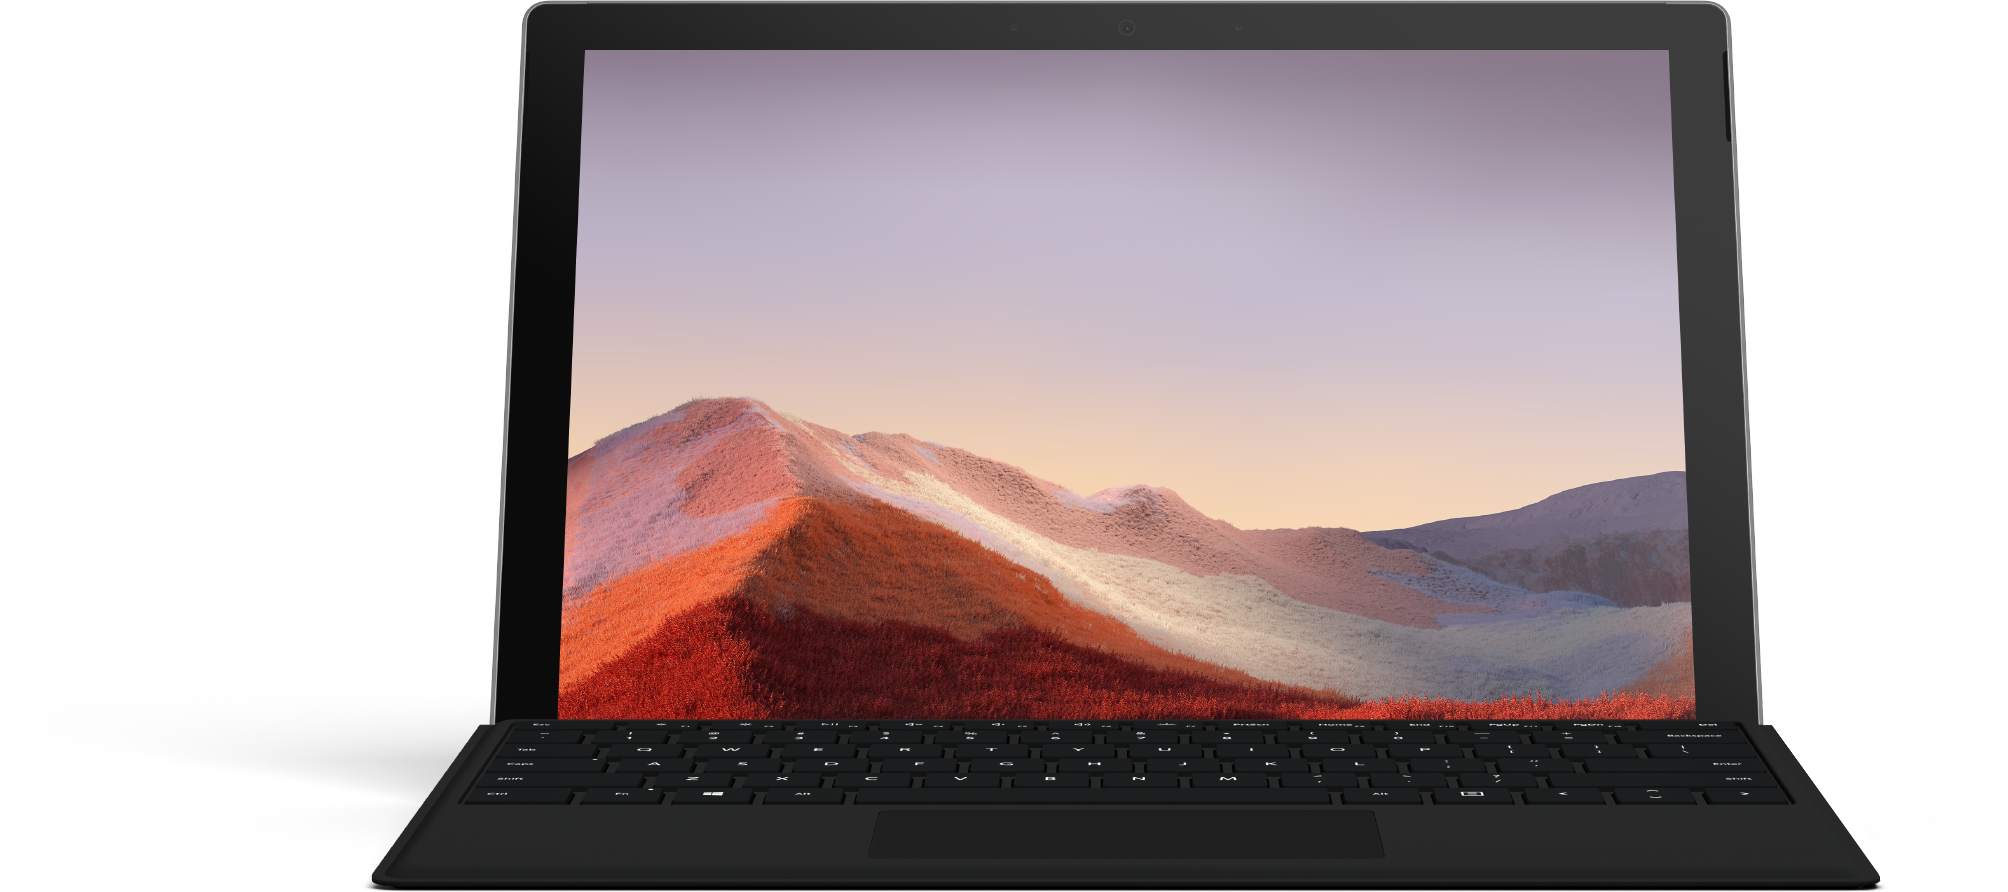 お得な 2 点セット Surface Pro 7 (プラチナ) + タイプ カバー キーボード (ブラック)